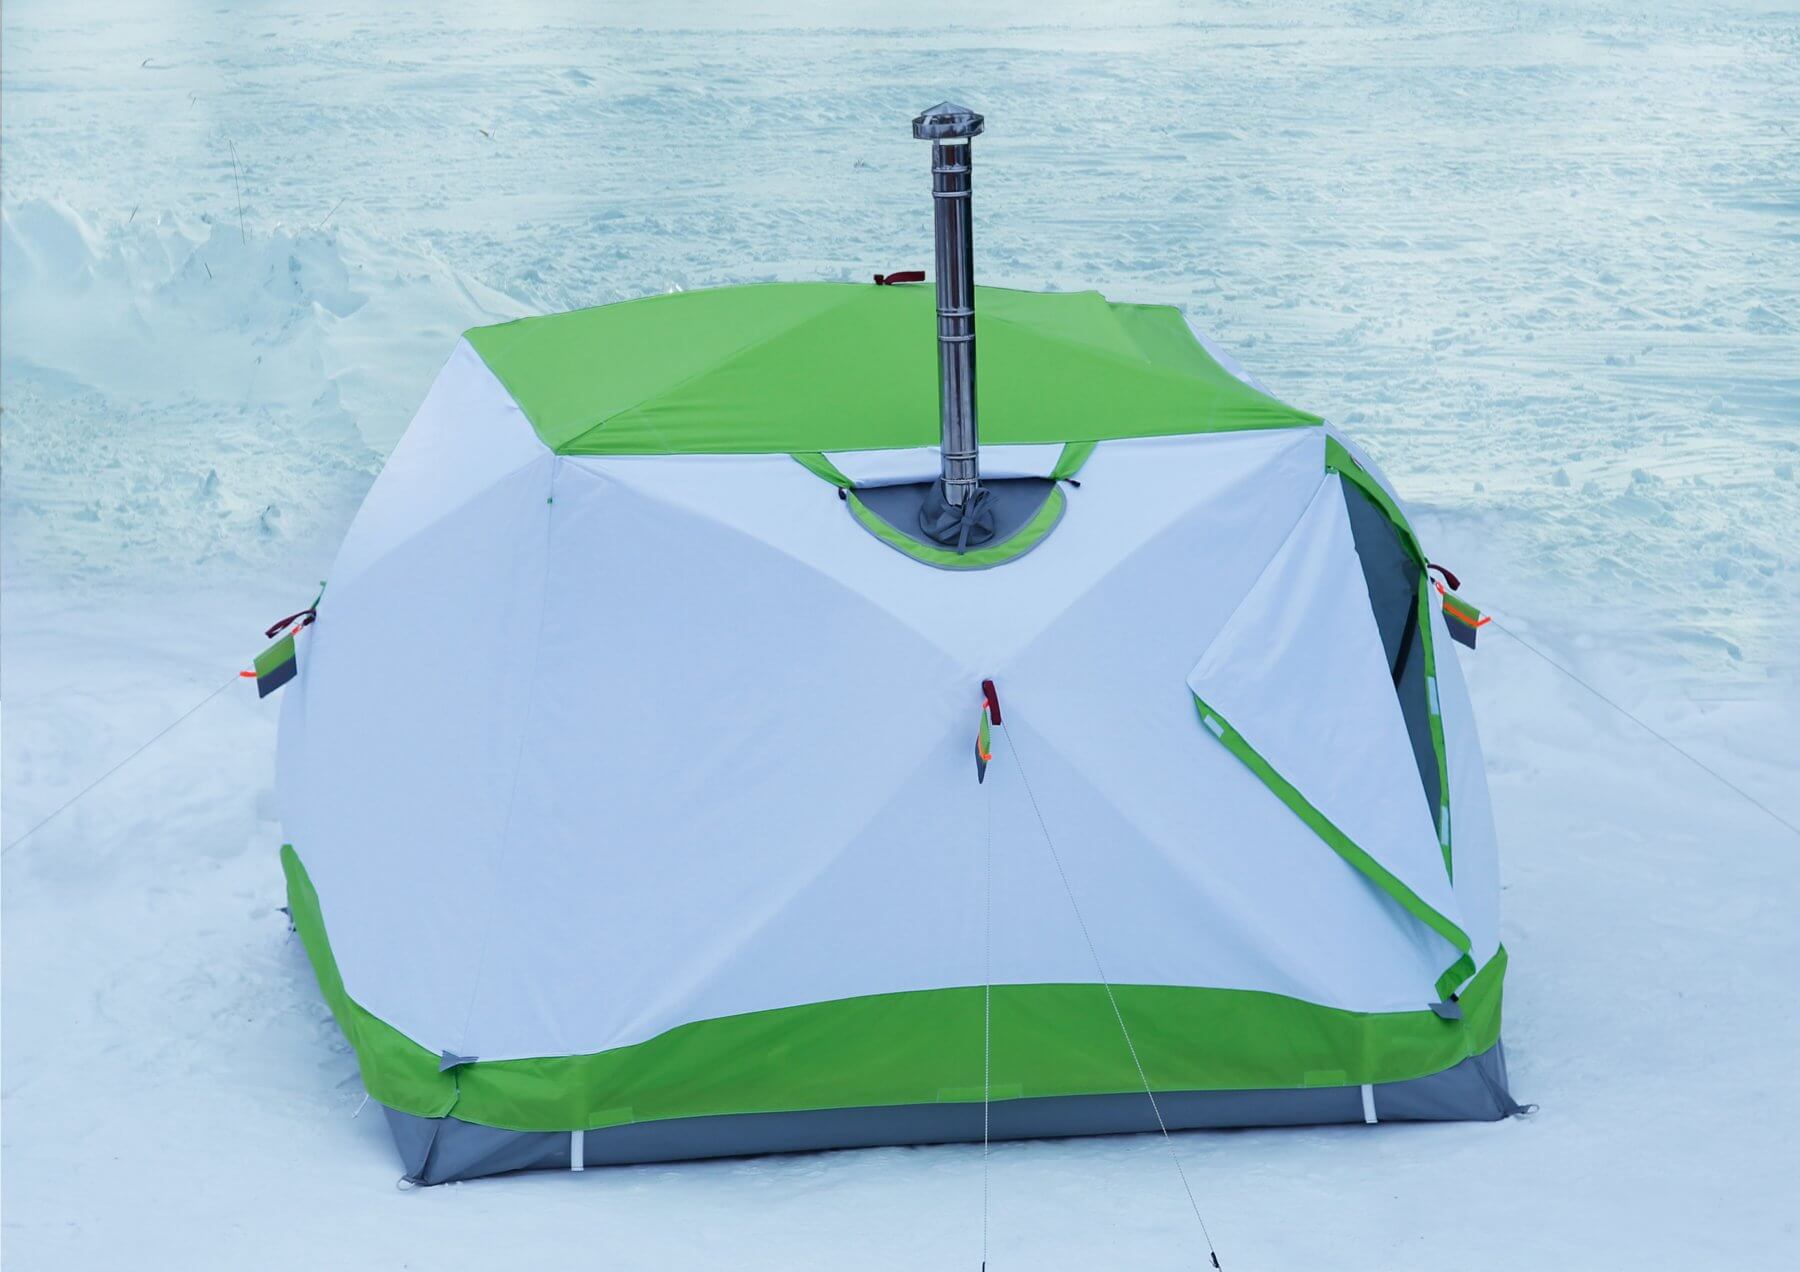 Зимняя палатка куб: основные характеристики, популярные модели, правильный выбор